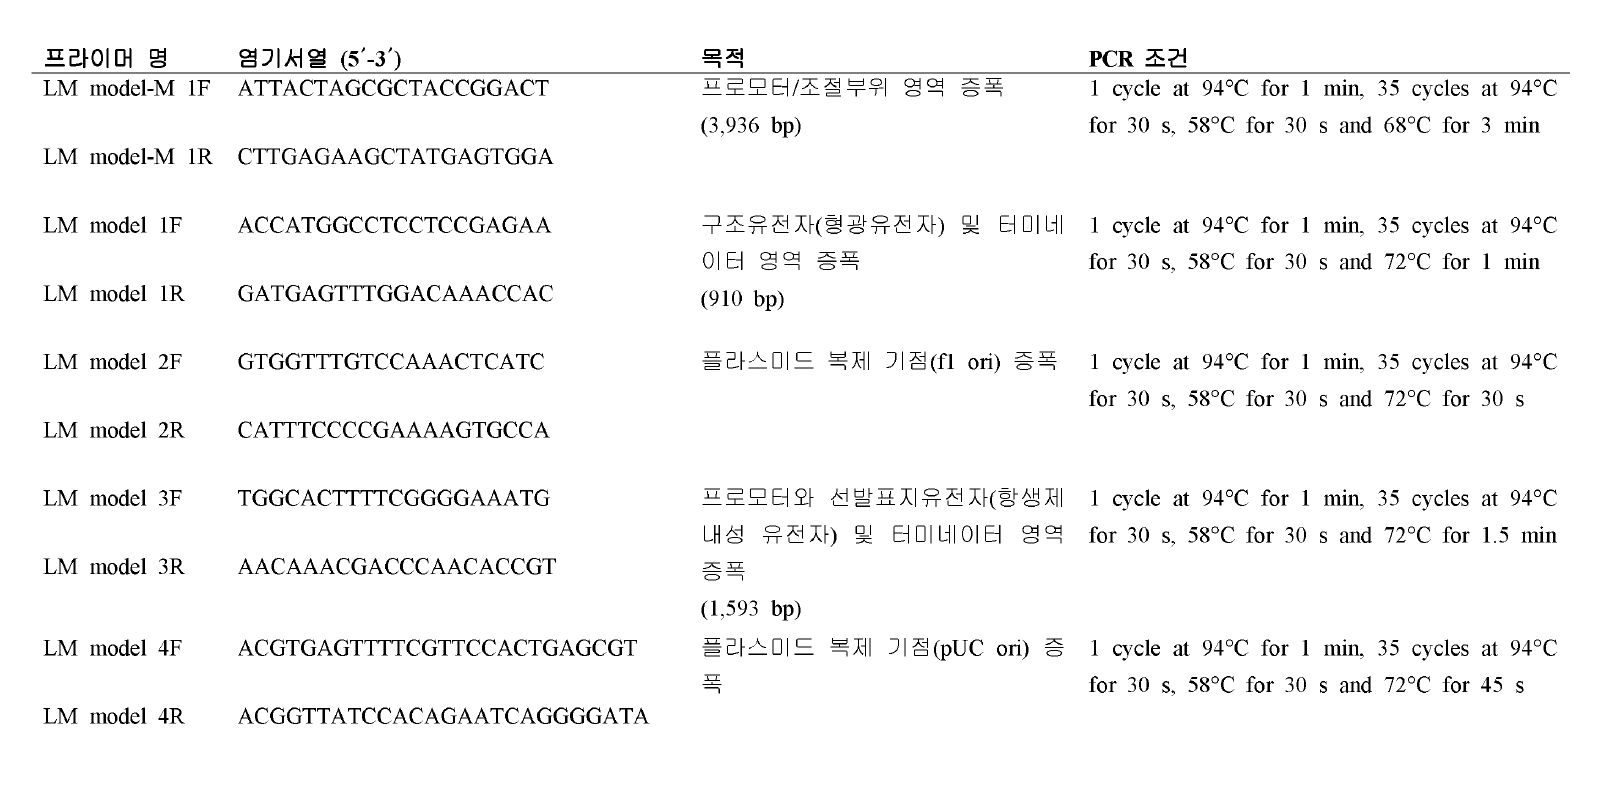 LM 모델 계통 -M 구성 요소별 PCR 분리에 사용된 프라이머 및 모이조건